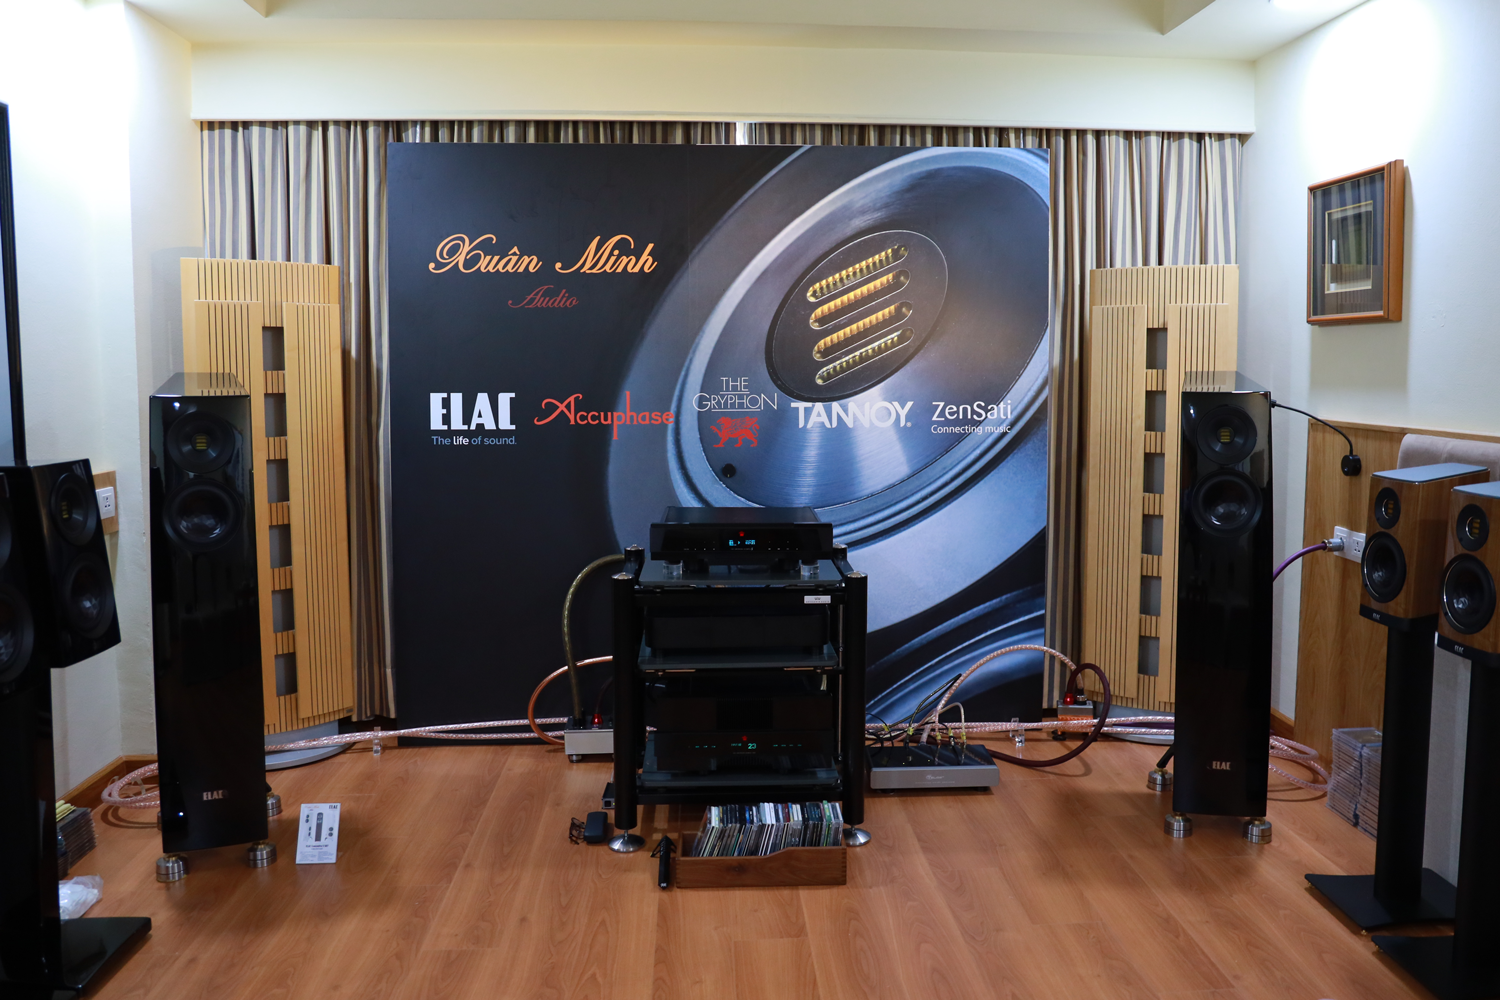 Phòng demo Xuân Minh Audio: Trình diễn các thiết bị của: Elac, The Gryphon, Zensati và Telos Audio Design...